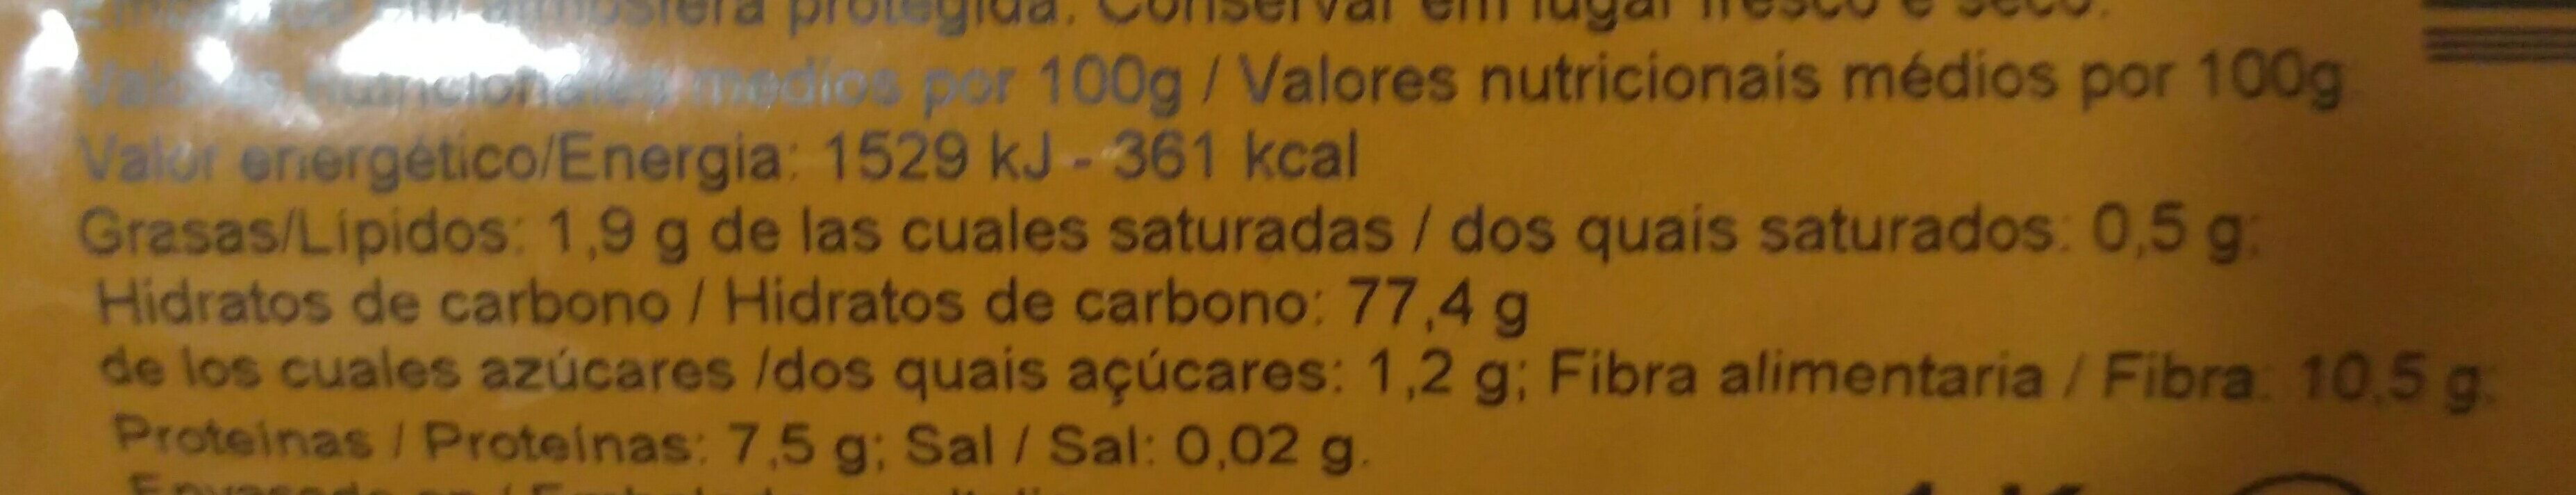 Arroz integral redondo - Nutrition facts - es